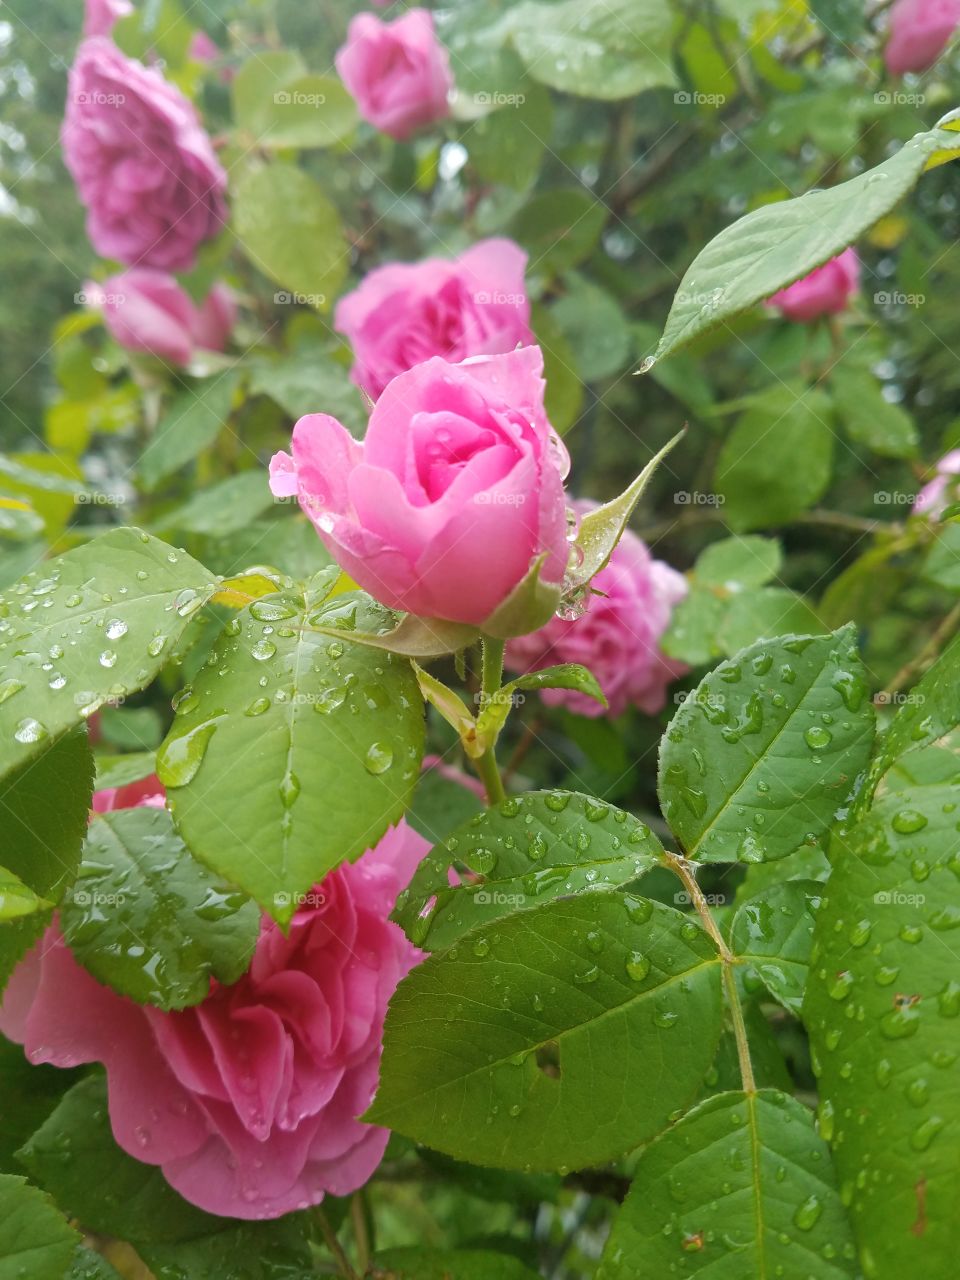 Wet Roses